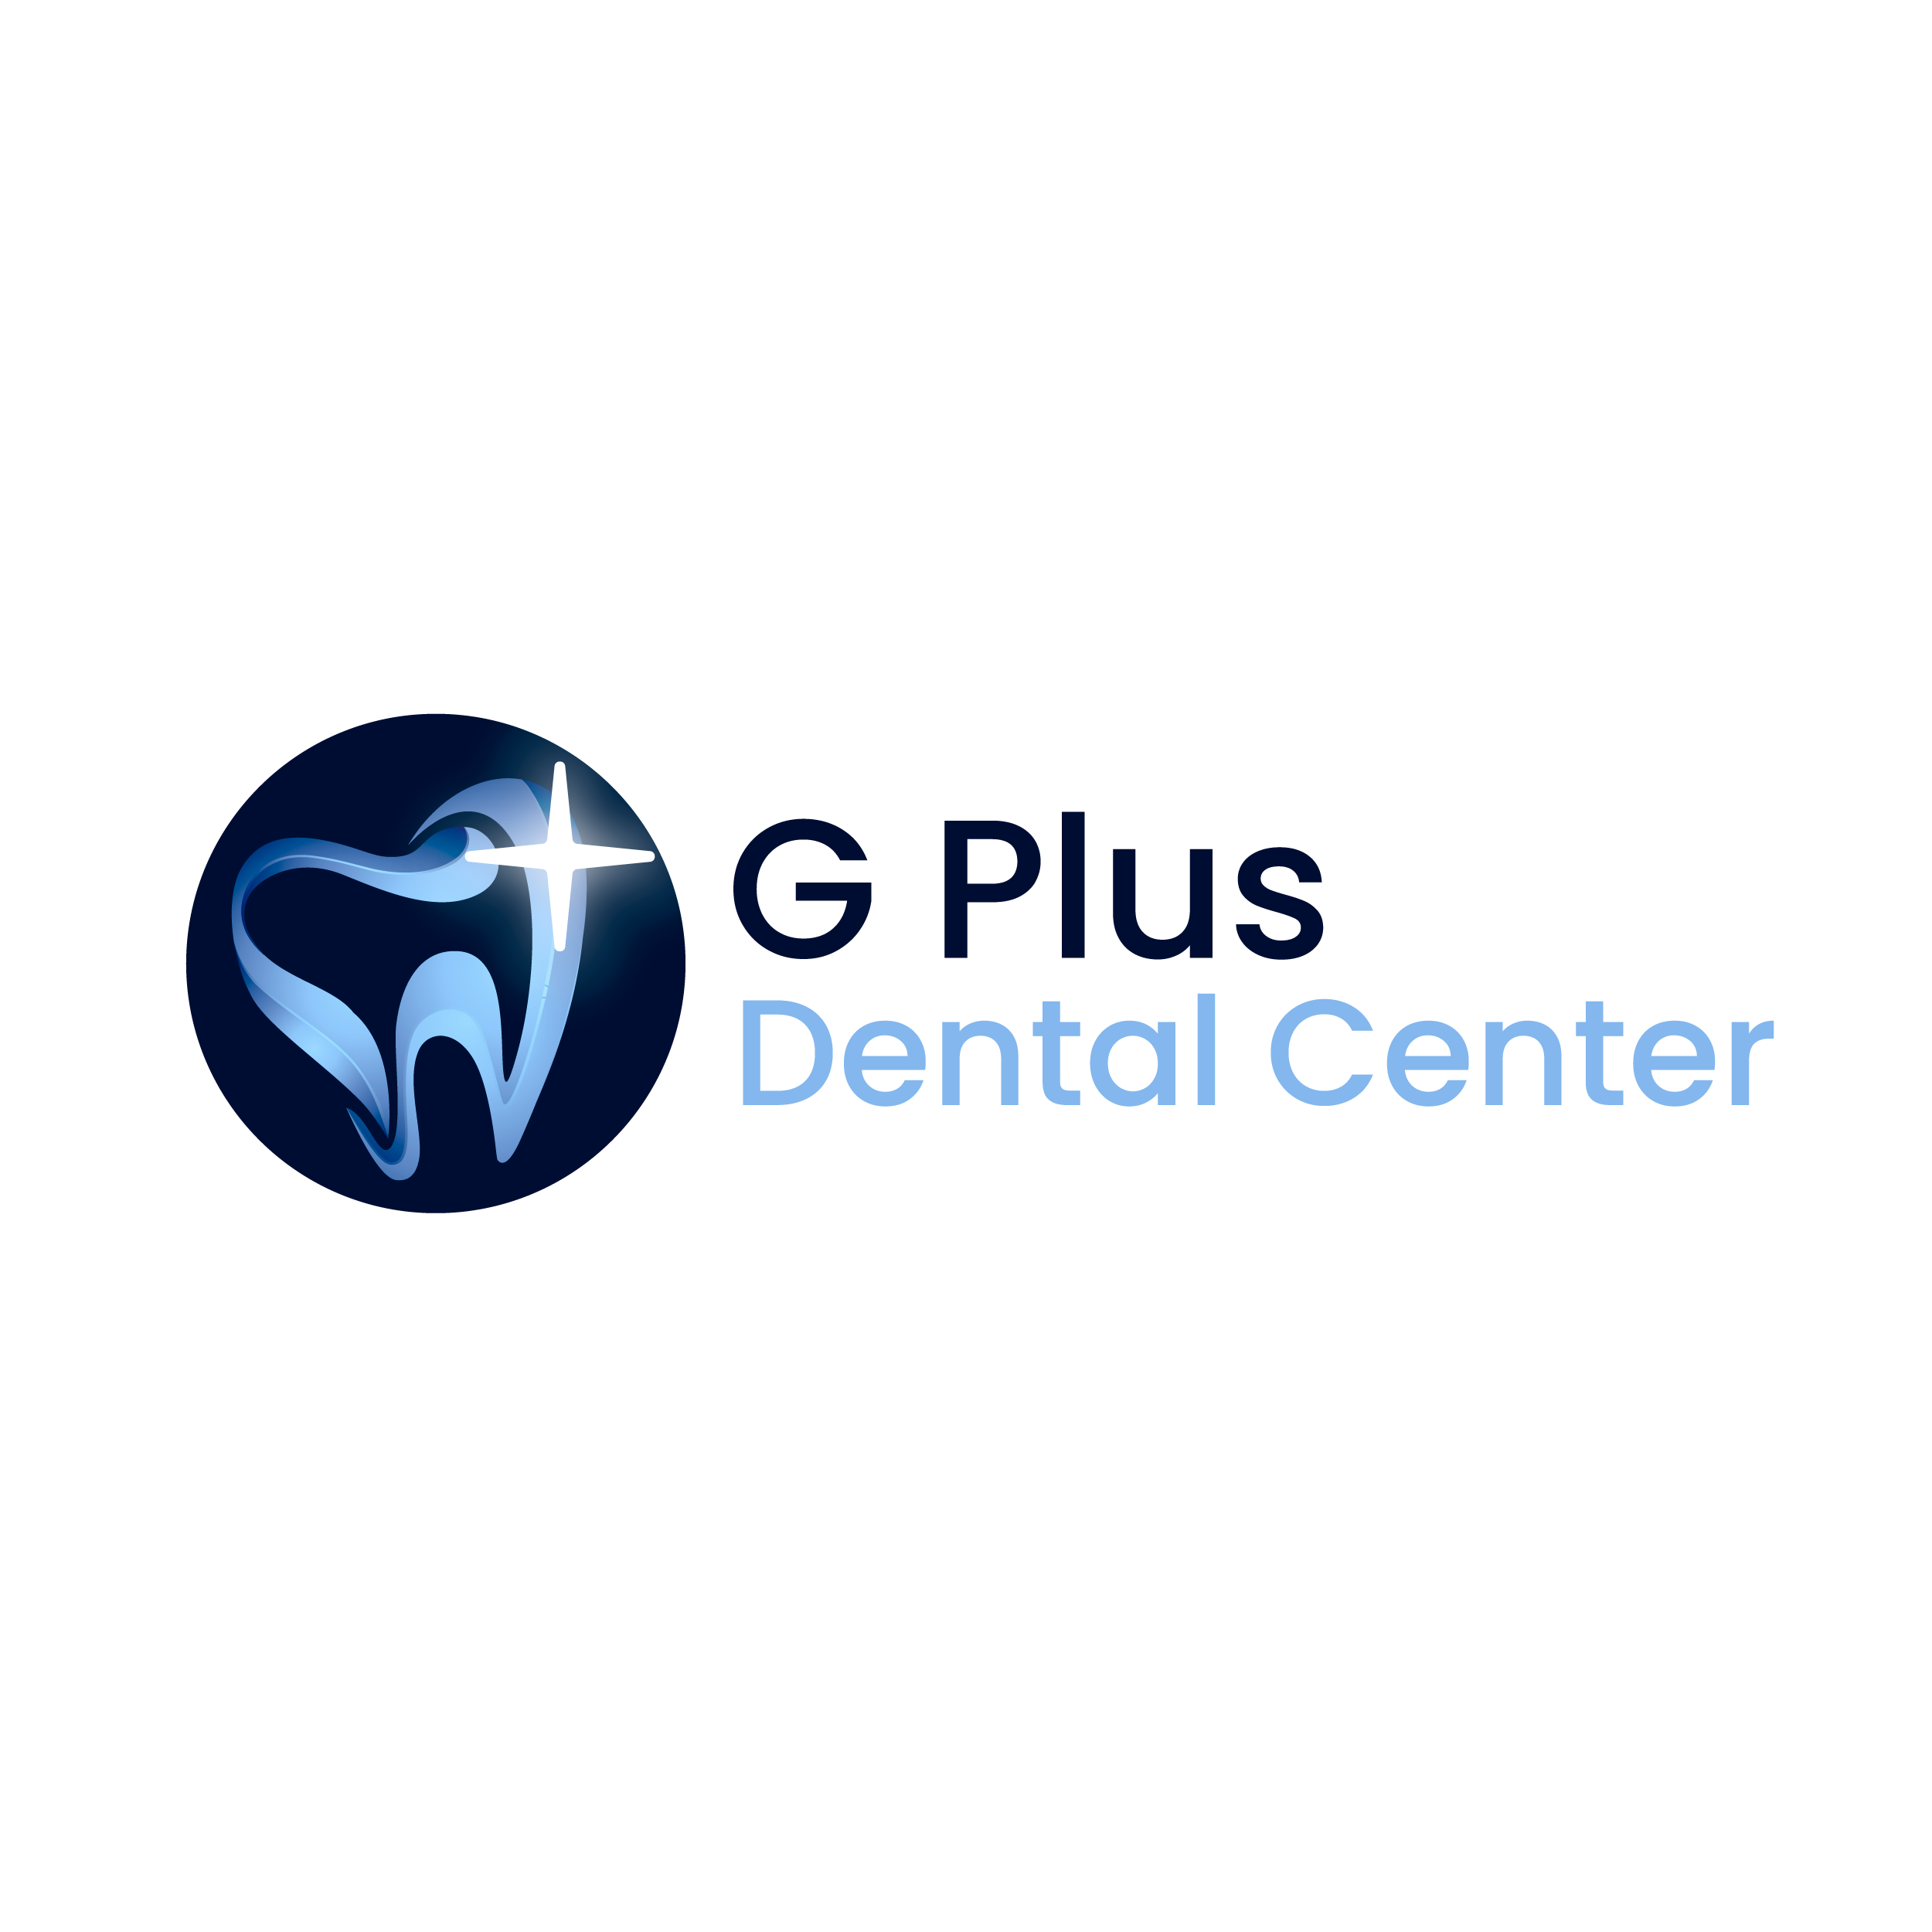 G Plus Dental Center